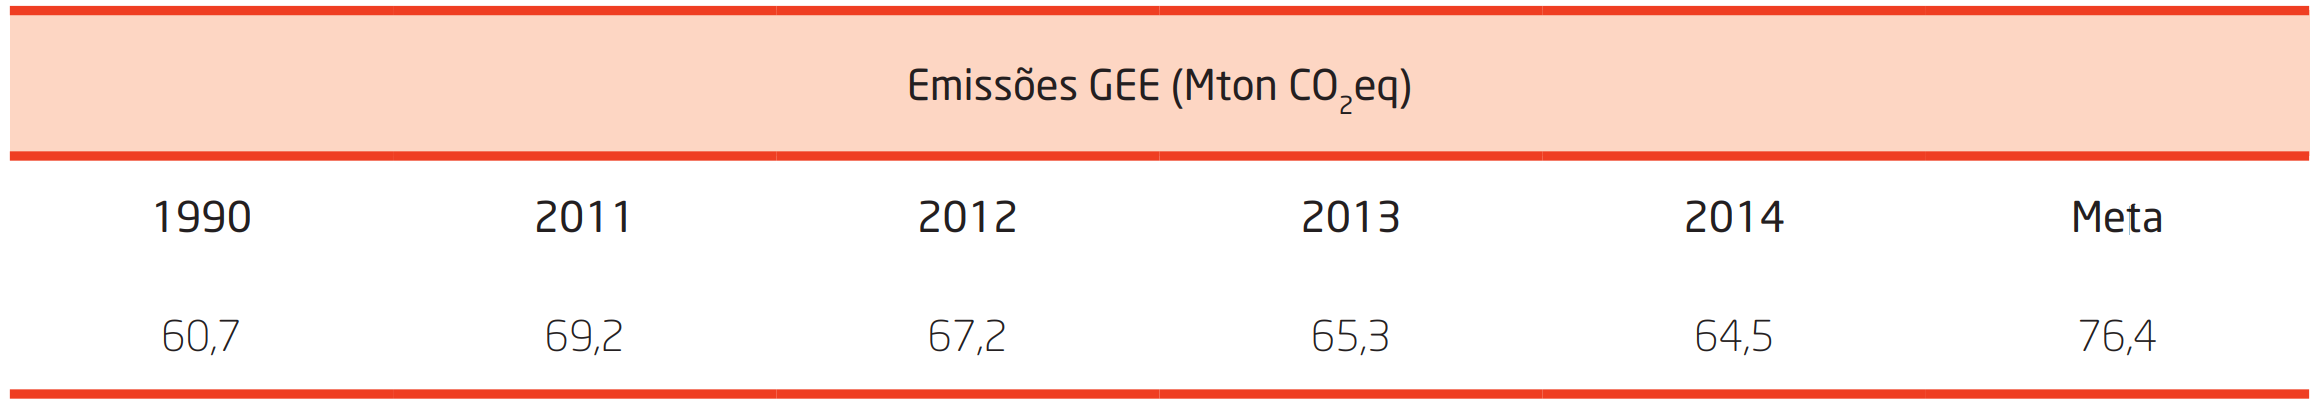 Tabela 1.1 – Emissões de Gases com Efeito de Estufa em Portugal